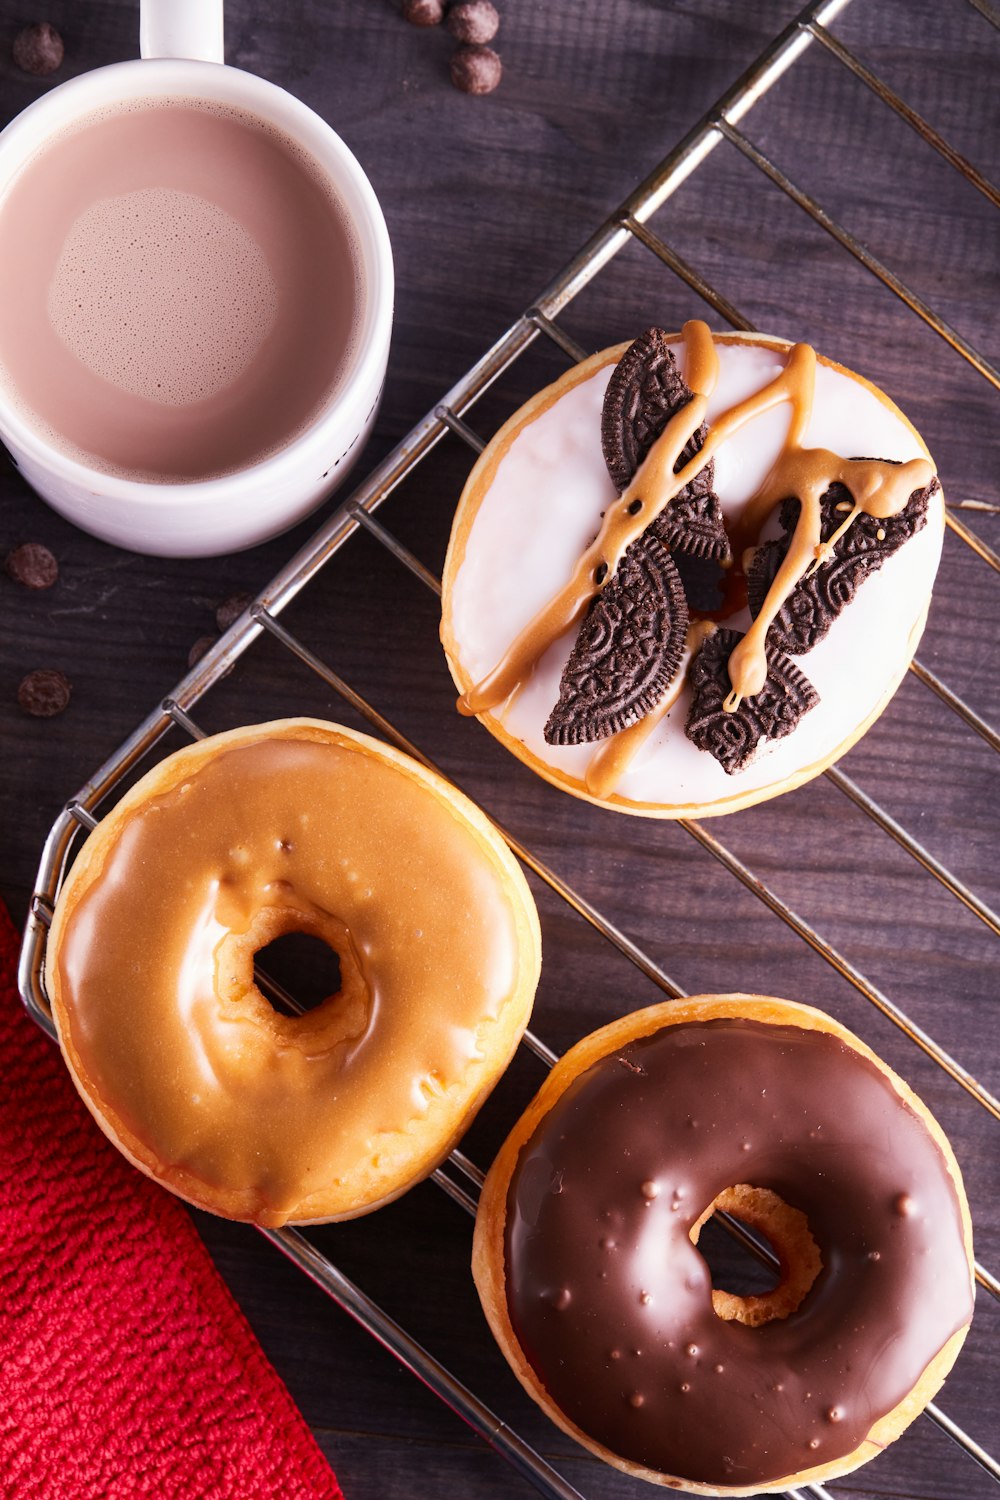 drei braune Donuts auf weißer Keramikplatte